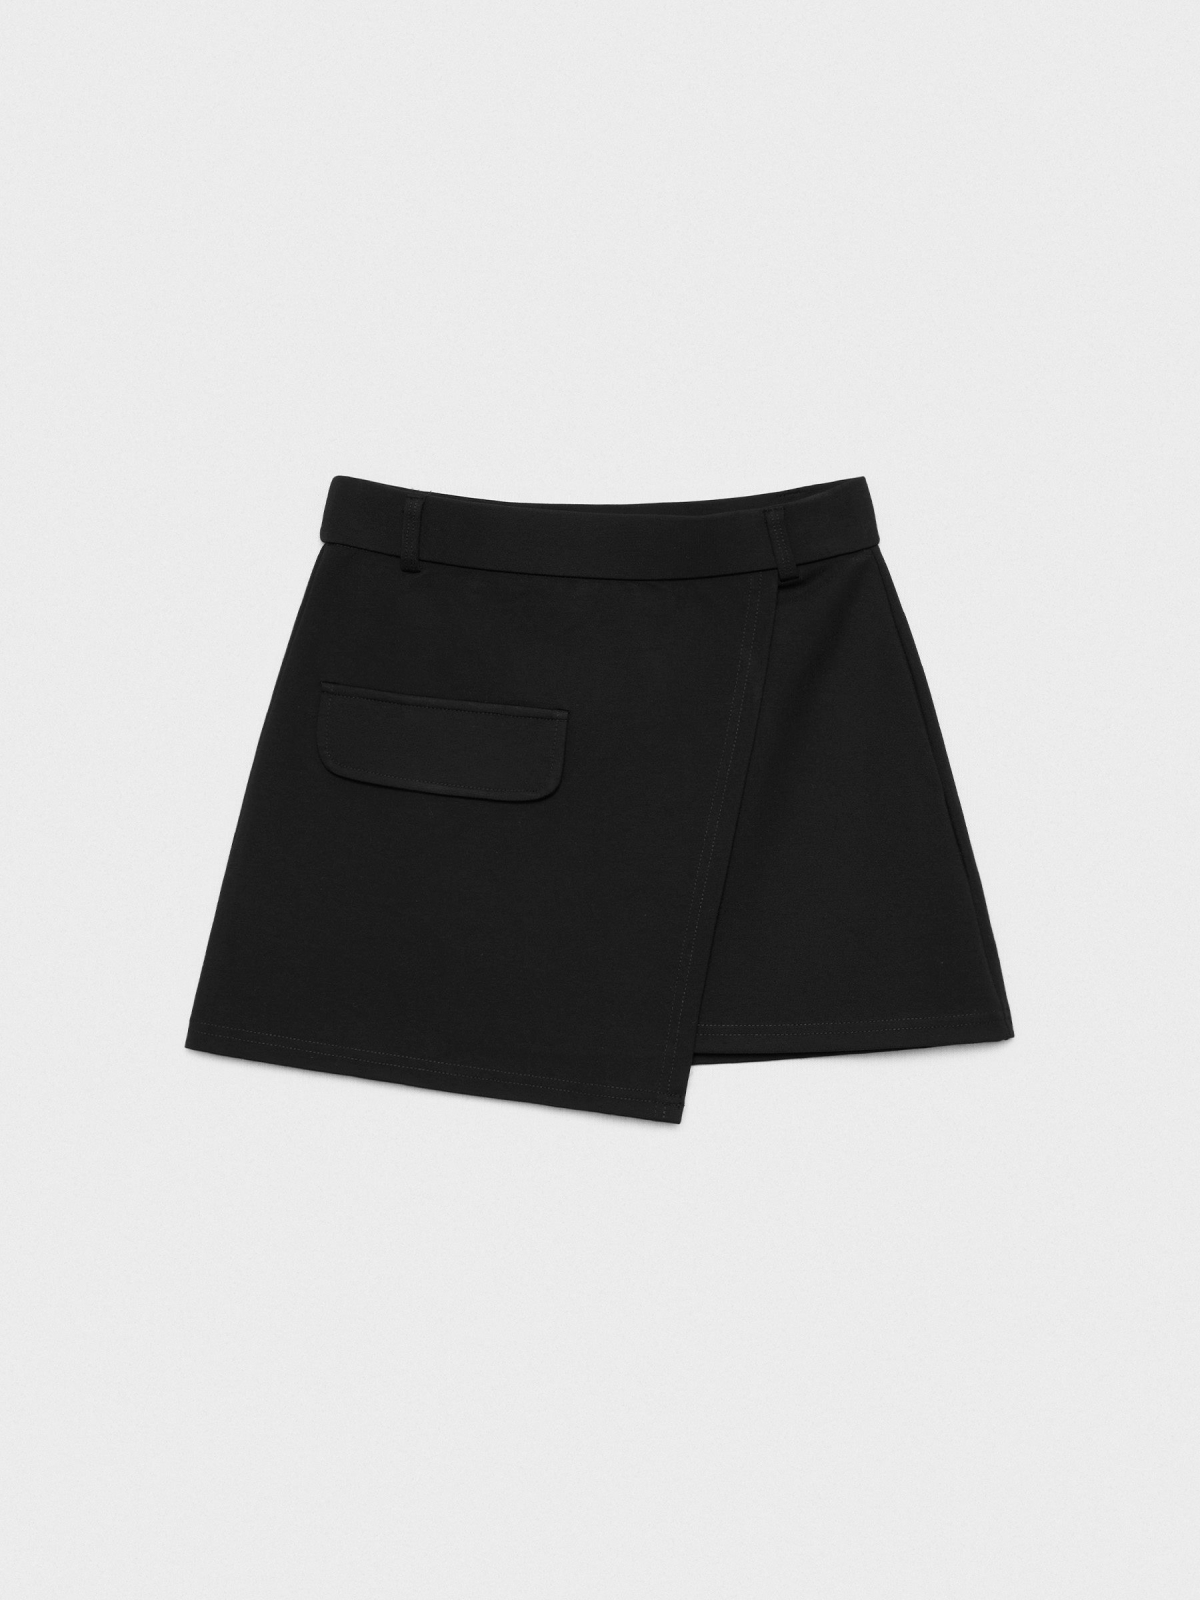  Mini-saia com bolso preto